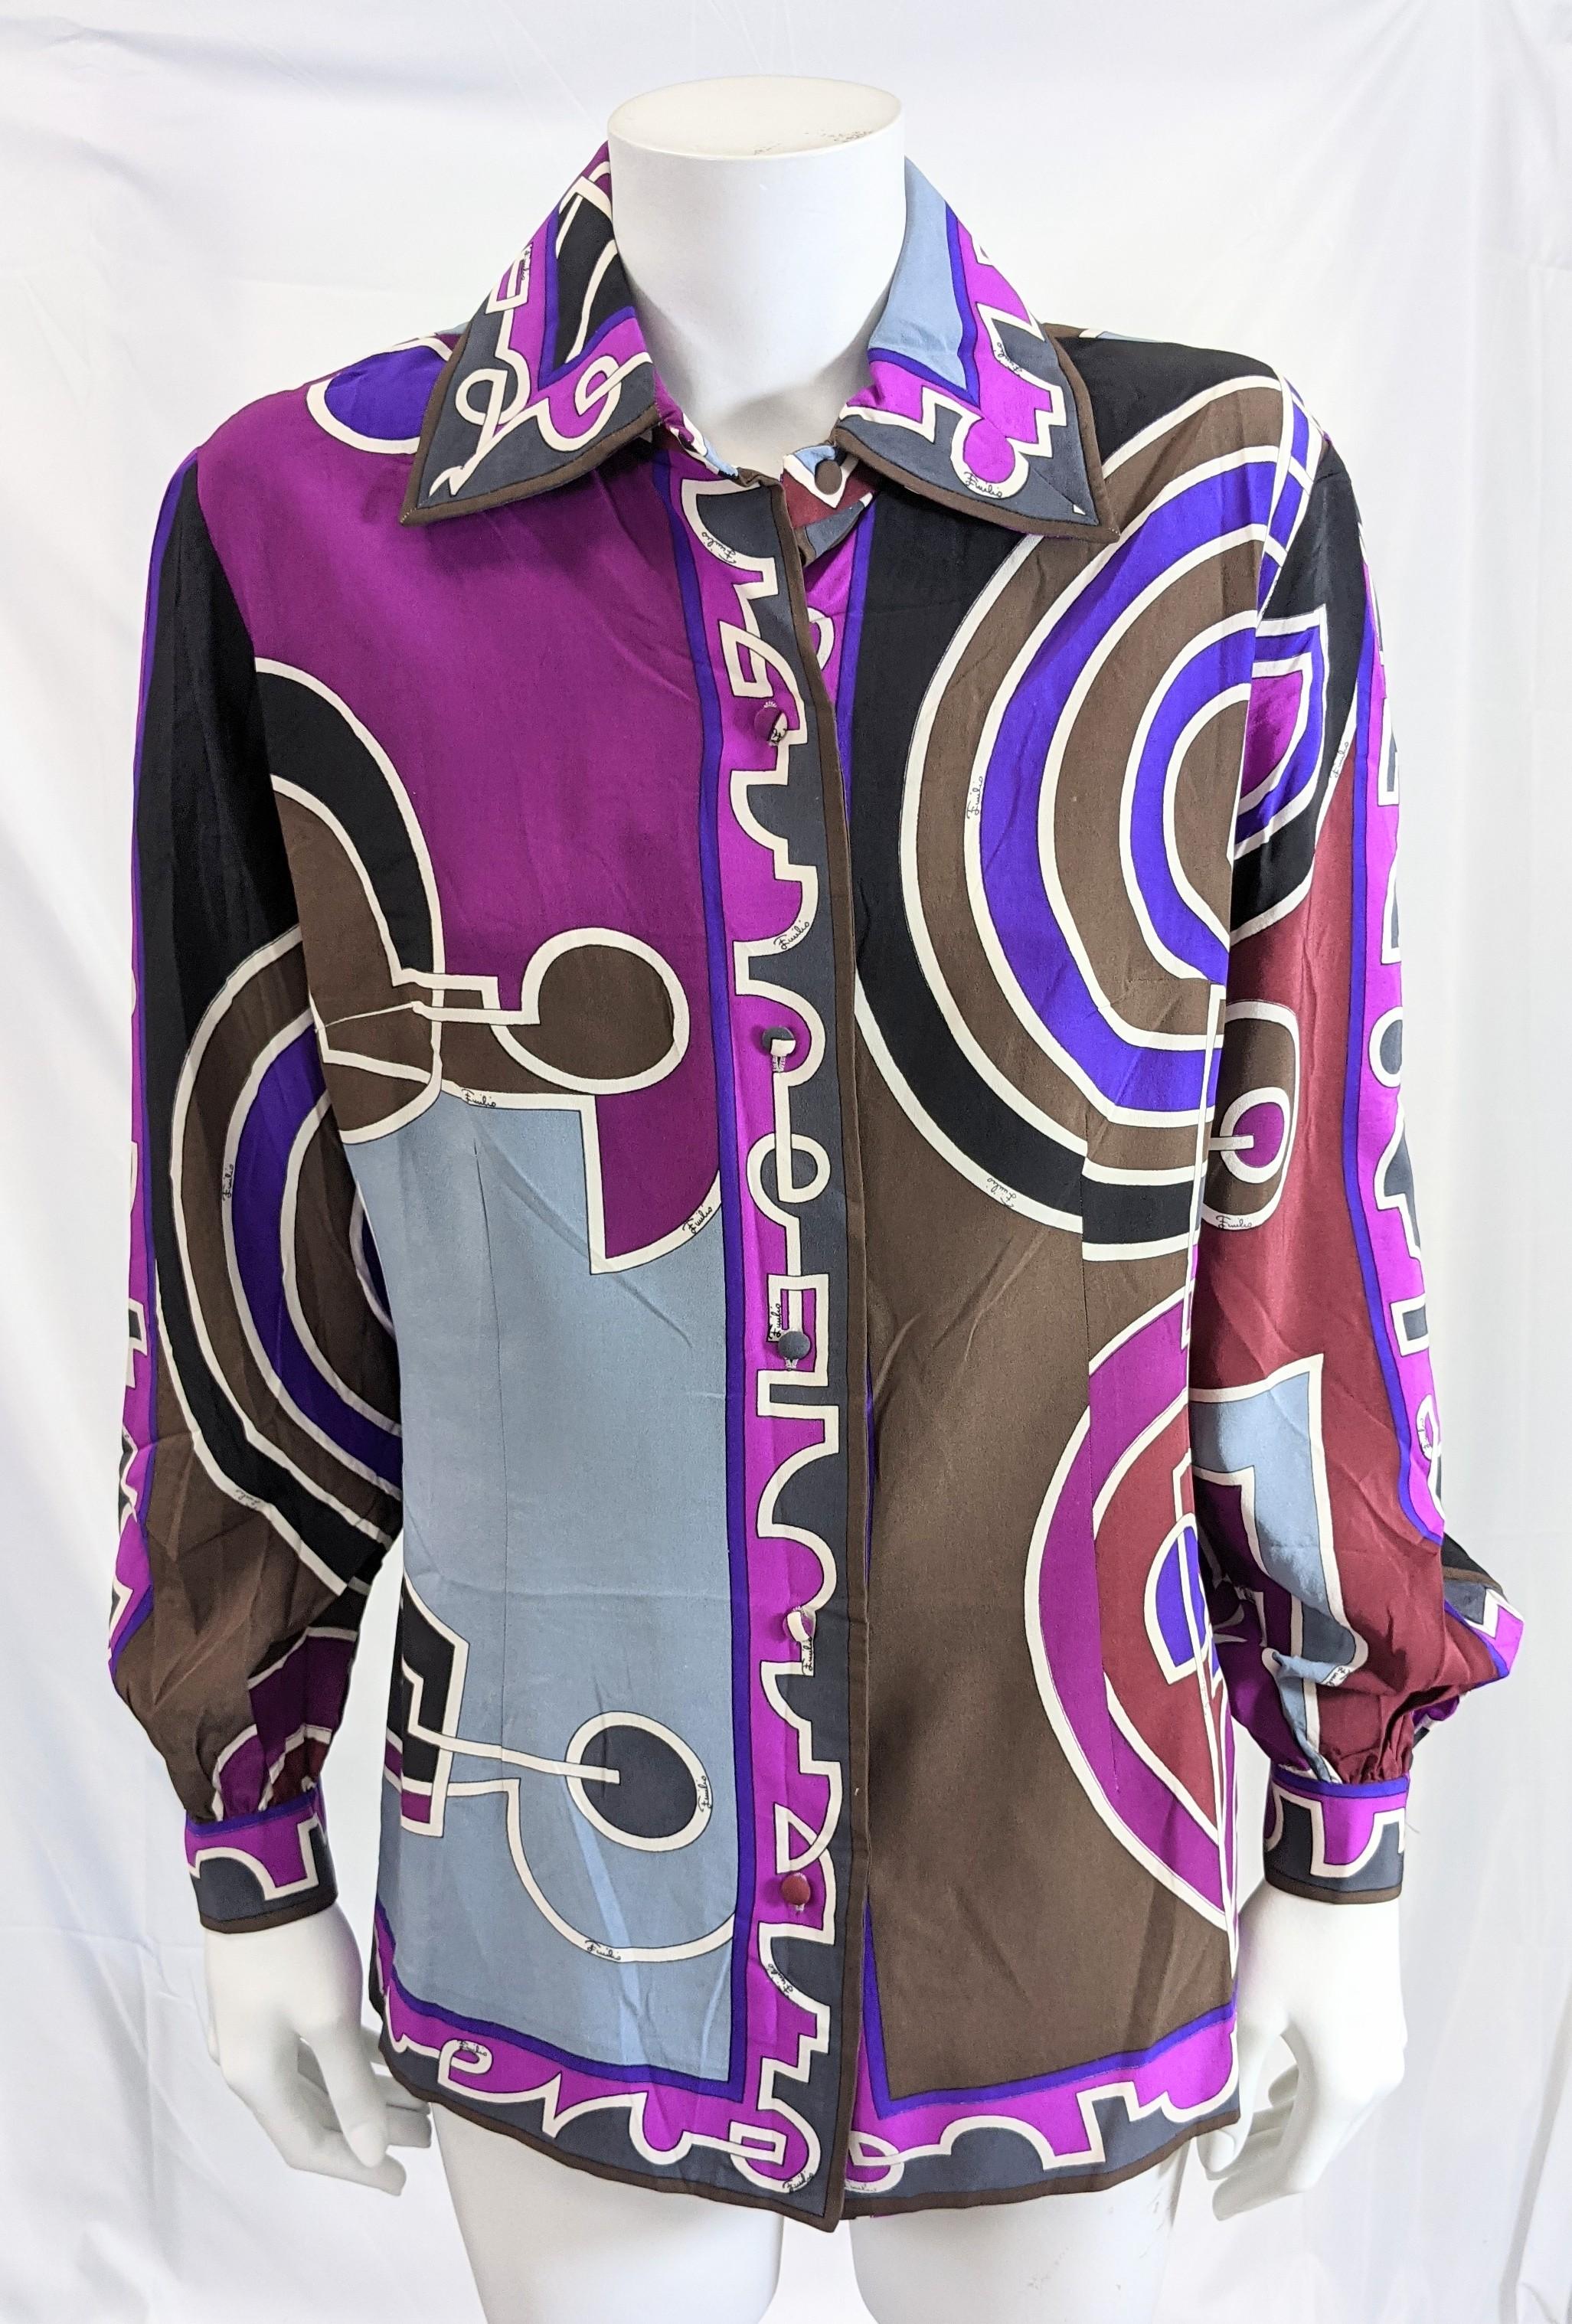 Superbe chemise vintage Emilio Pucci en crêpe de soie des années 1960. Des graphiques vibrants dans des tons de violet et de brun. Col complet, boutons en soie recouverts sur la patte de boutonnage et manches entièrement froncées. Vintage taille 12,